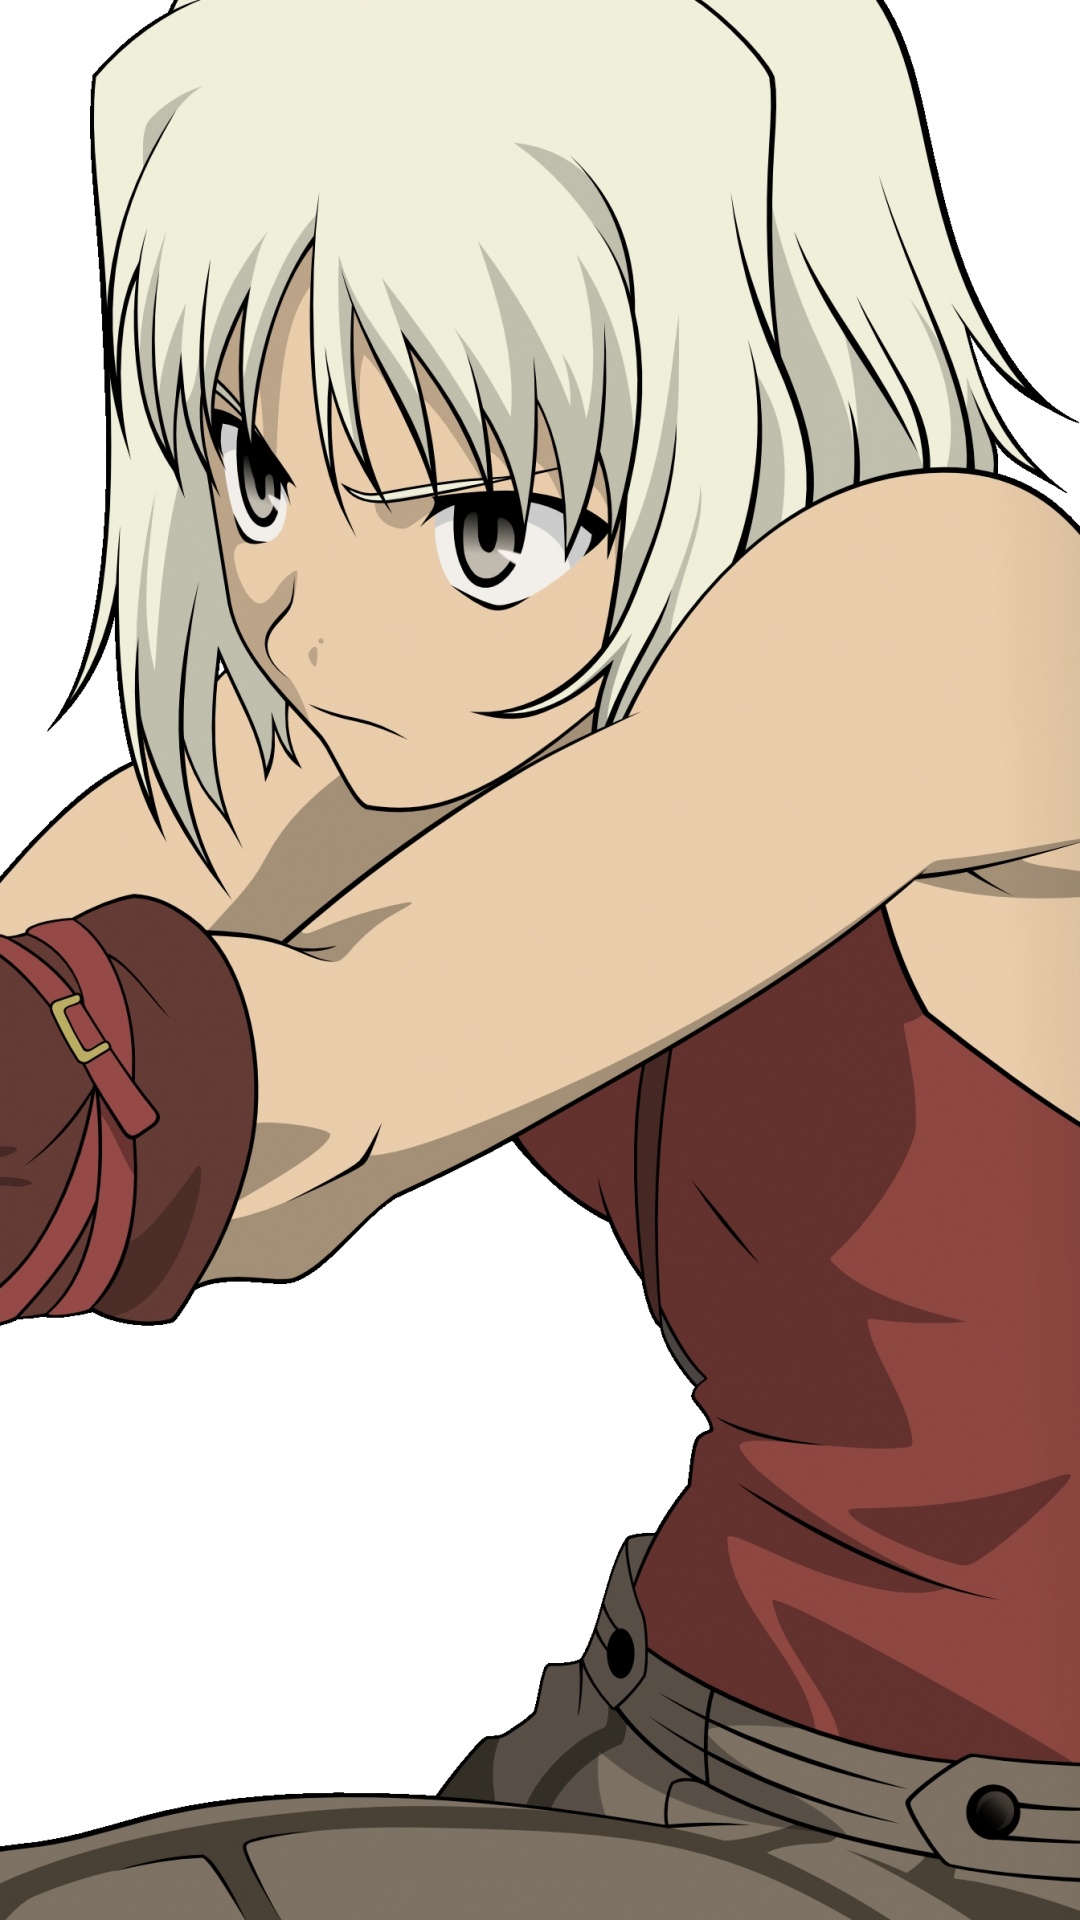 Blonde Männliche Anime-Figur Mit Schwarzer Halbautomatischer Pistole. Wallpaper in 1080x1920 Resolution